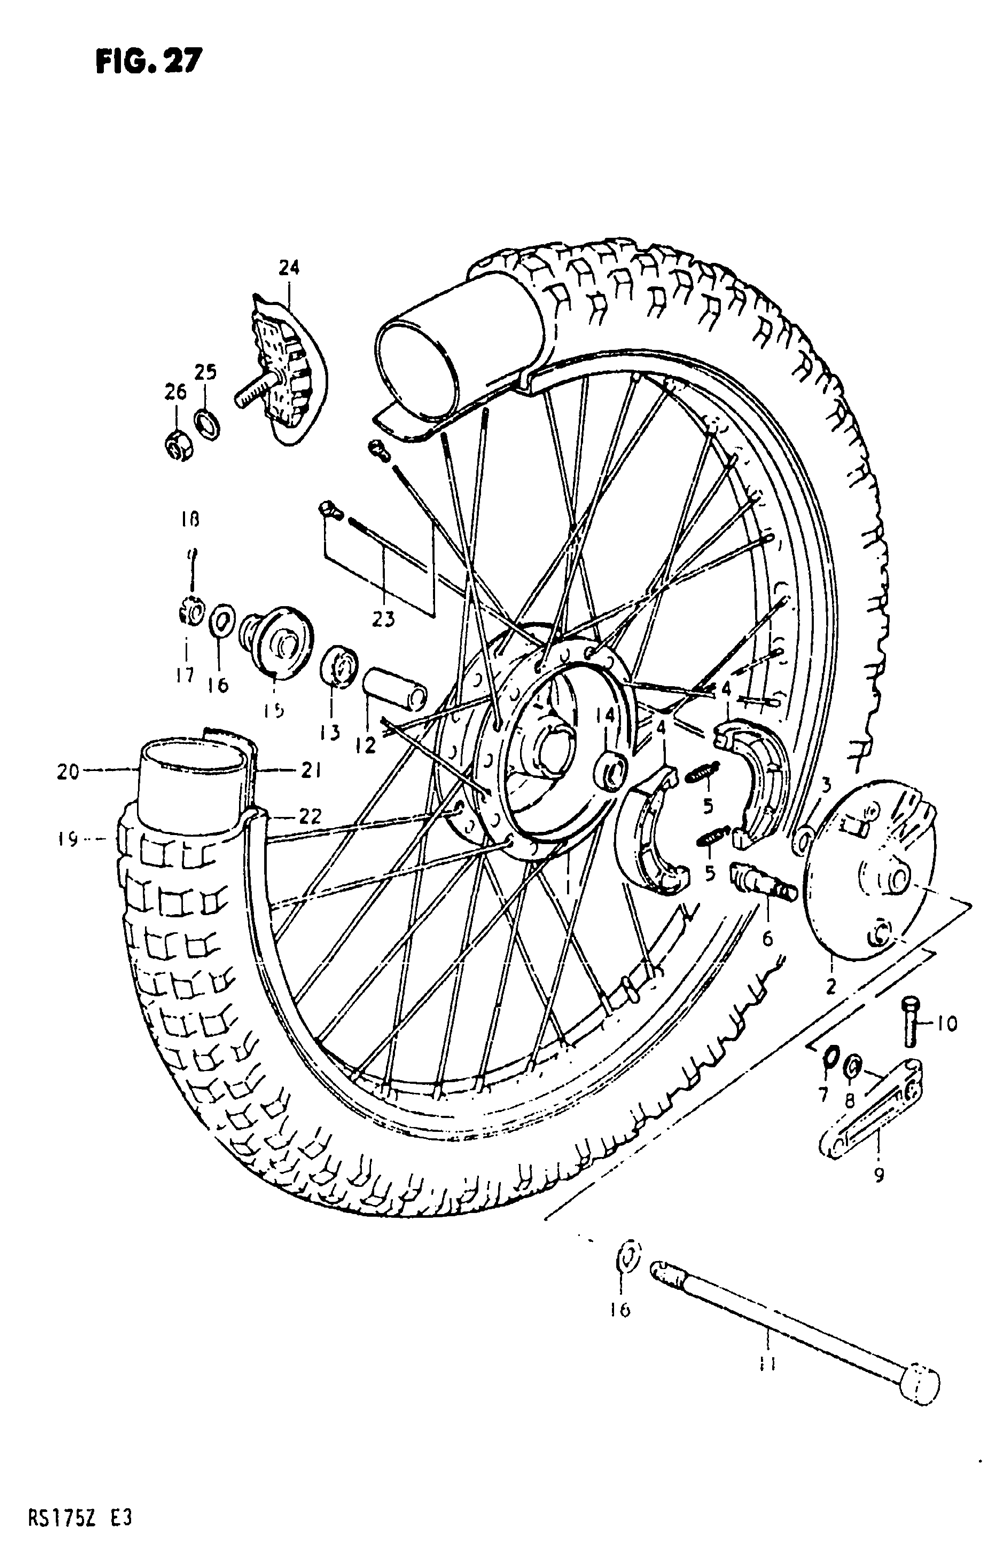 Front wheel (model t)